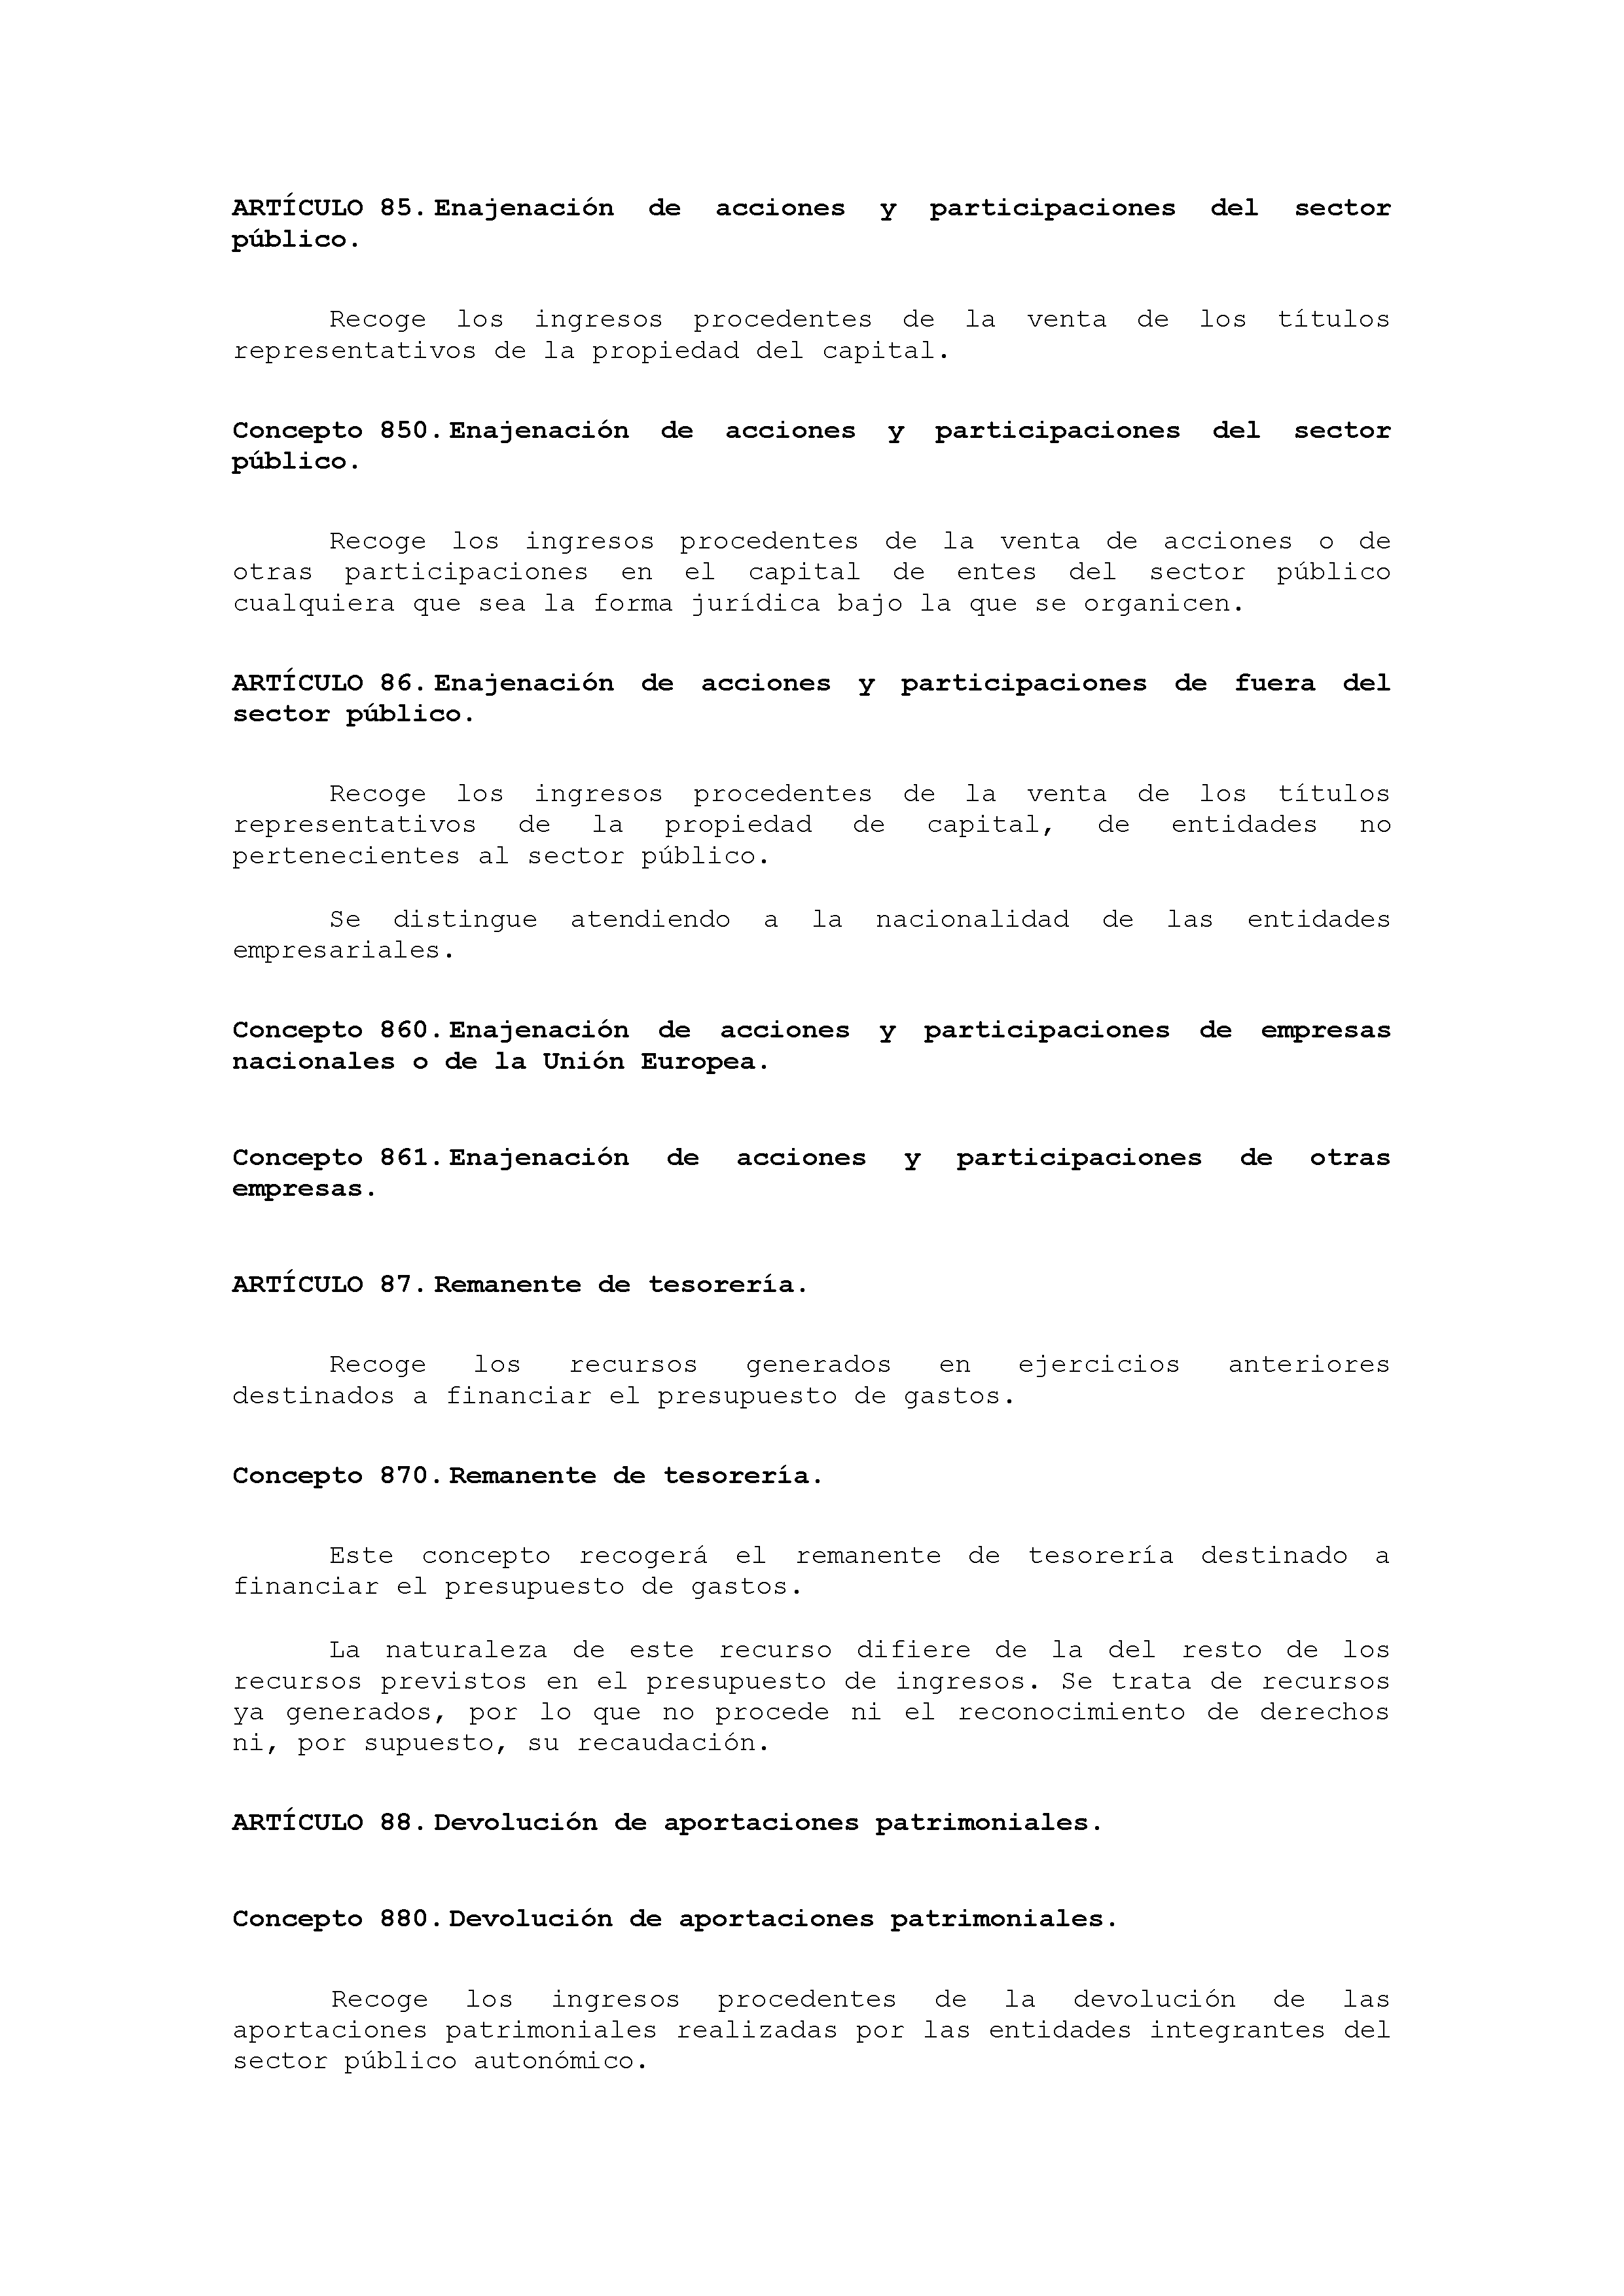 ANEXO VIII CÓDIGO DE LA CLASIFICACIÓN ECONÓMICA DE LOS INGRESOS PÚBLICOS Pag 25